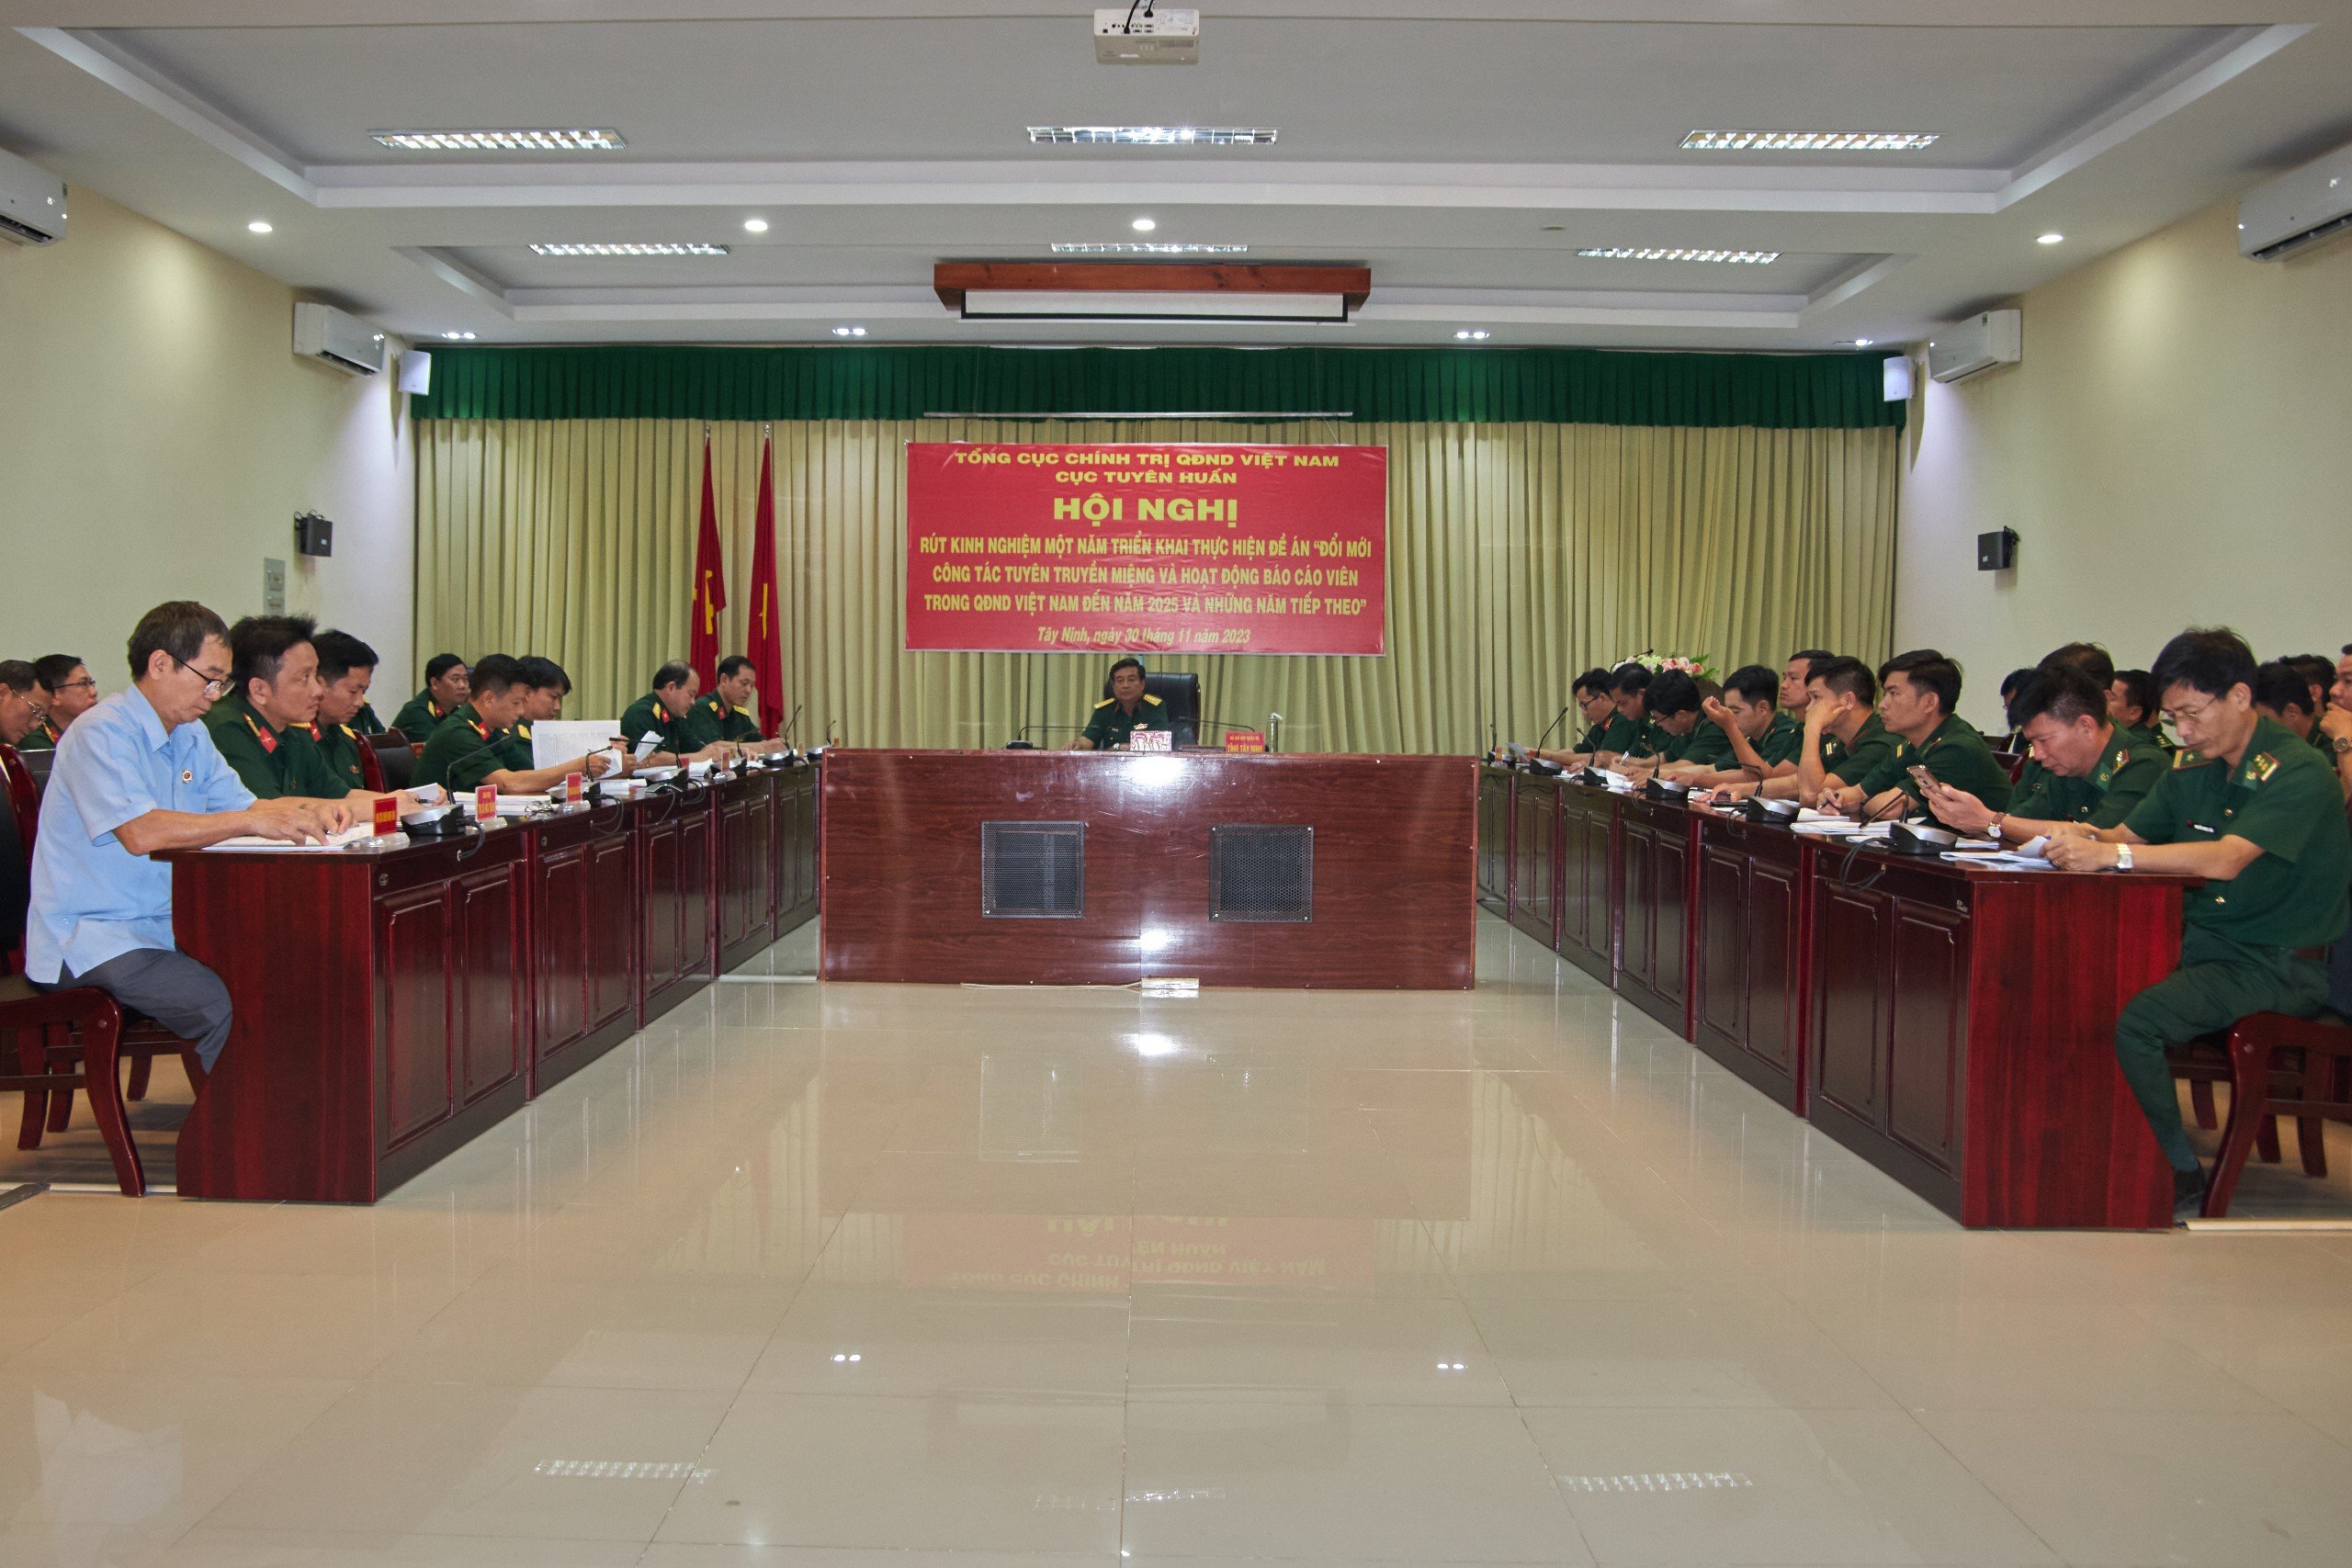 đồng chí Đại tá Đỗ Thành Việt - Phó Chính ủy Bộ CHQS tỉnh Tây Ninh chủ trì điểm cầu